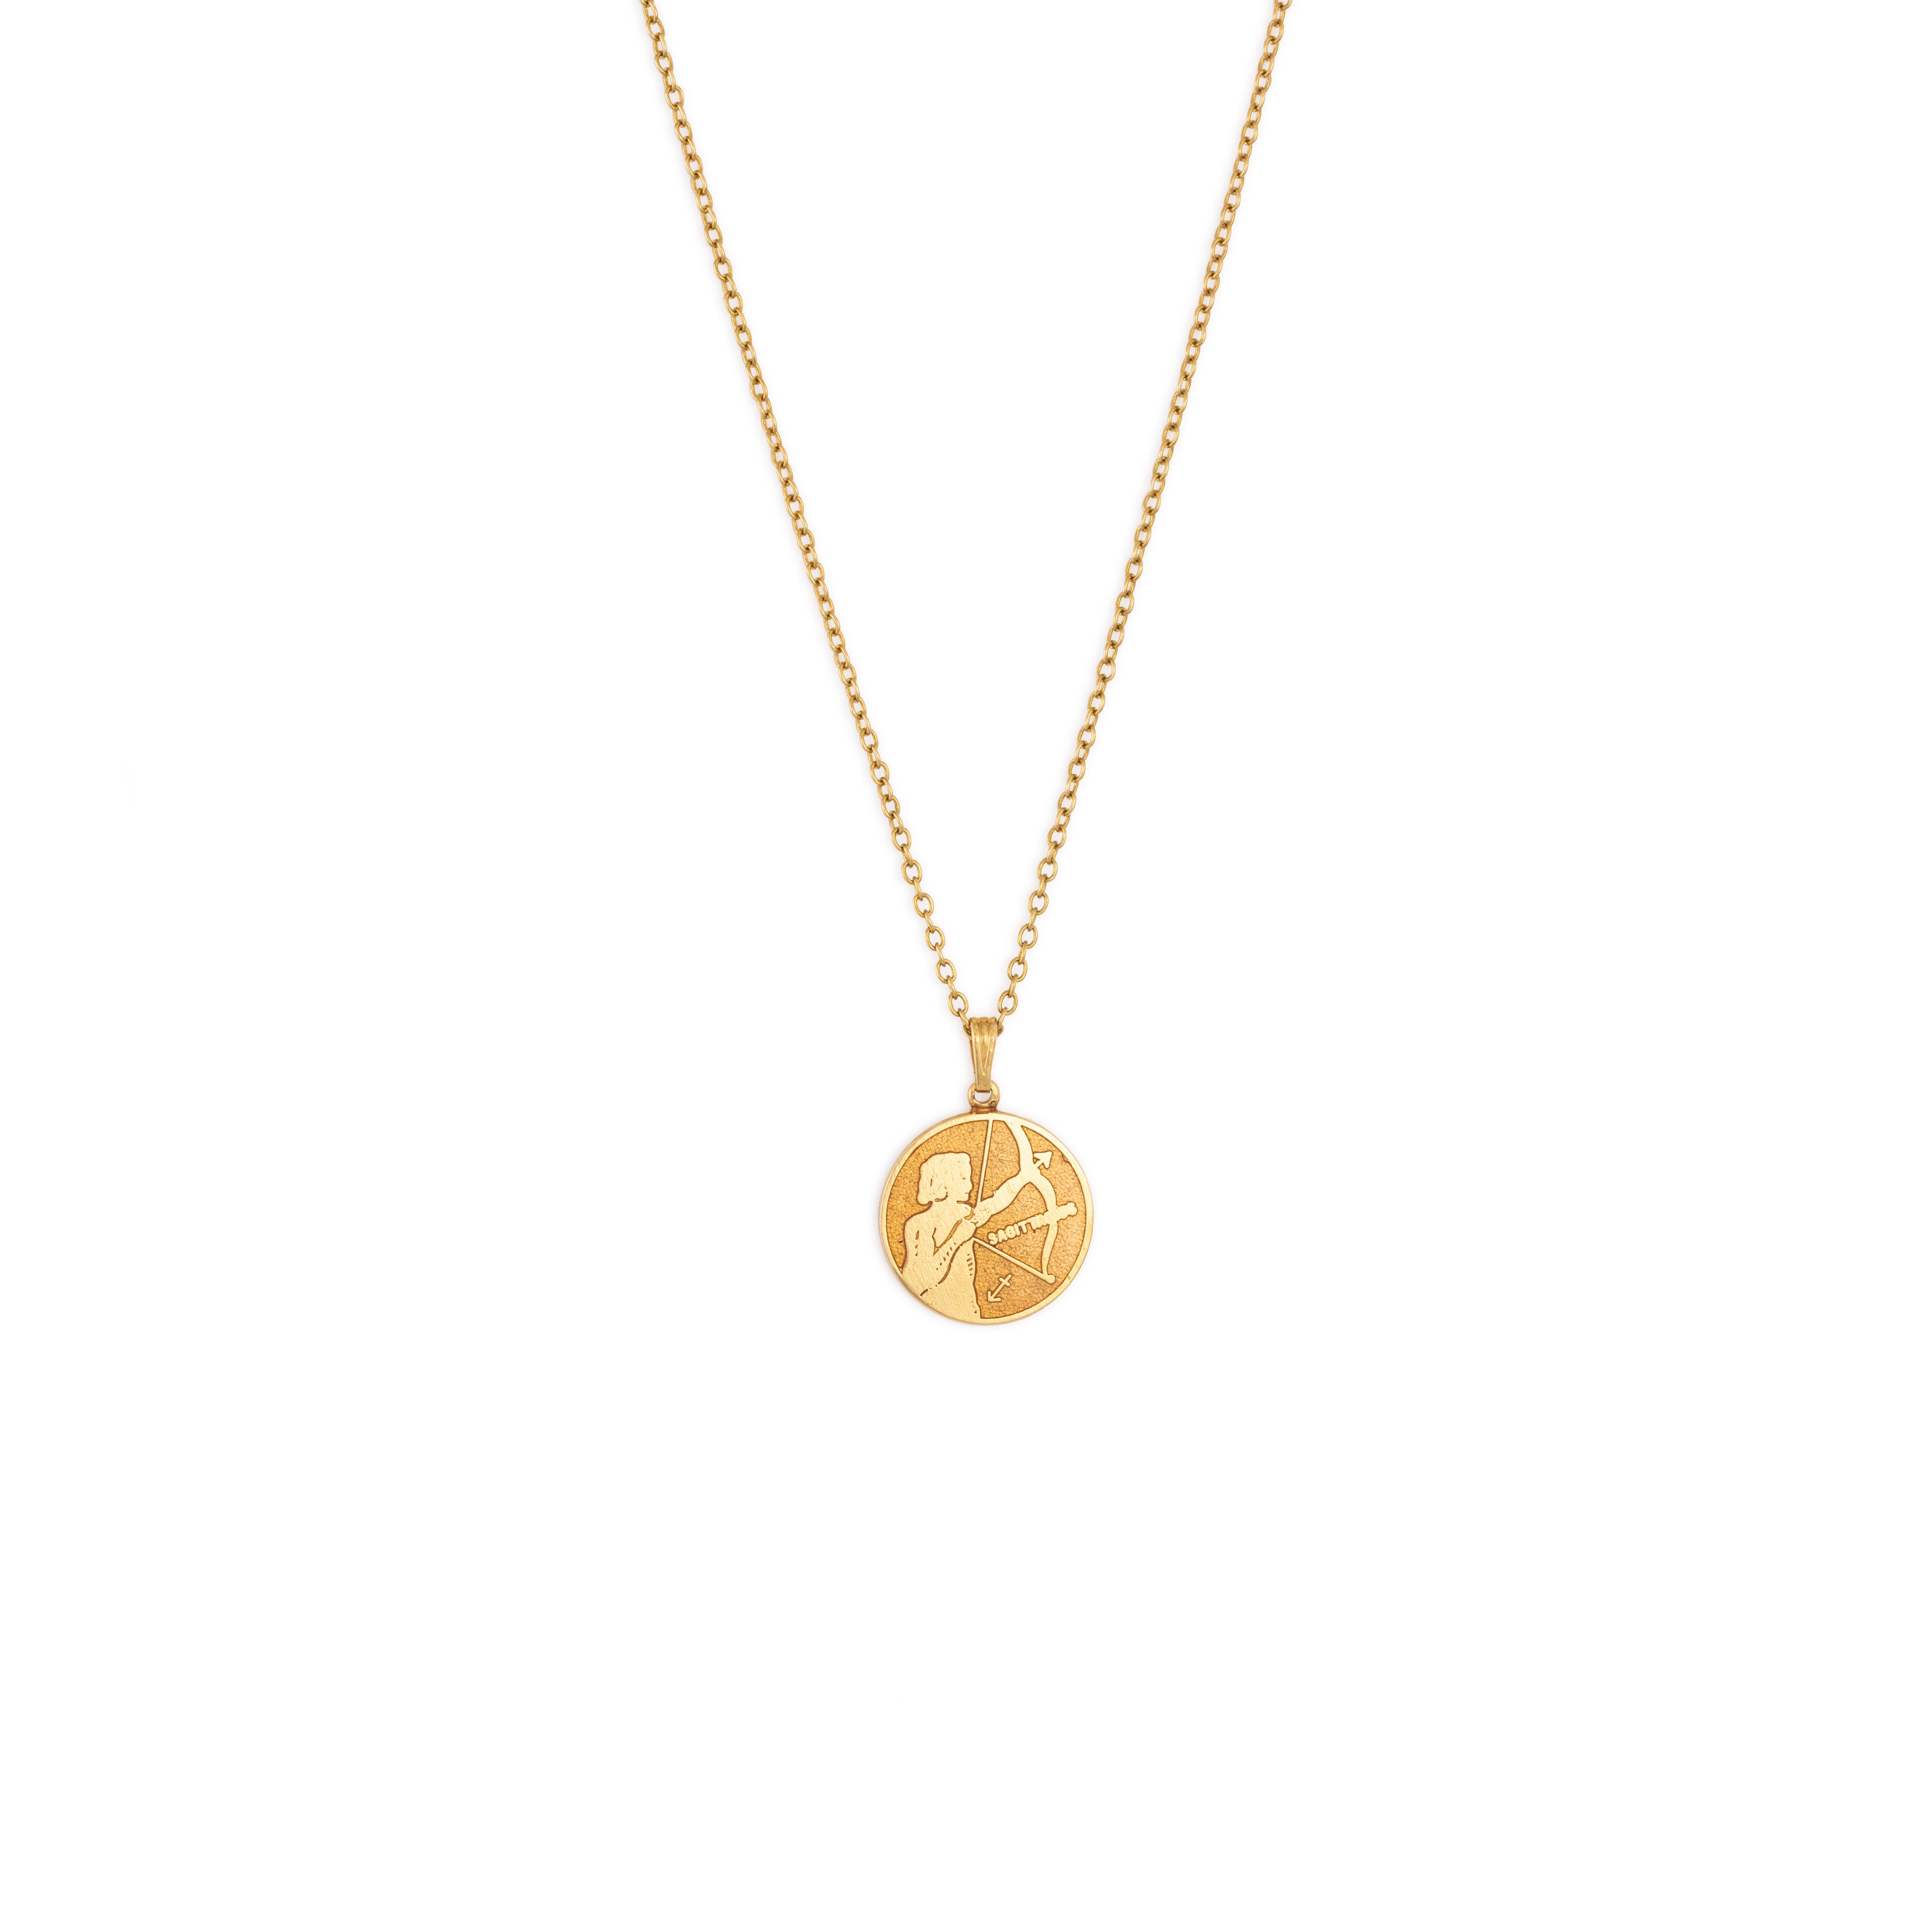 colourful zodiac pendant in gold in a thin rolo chain